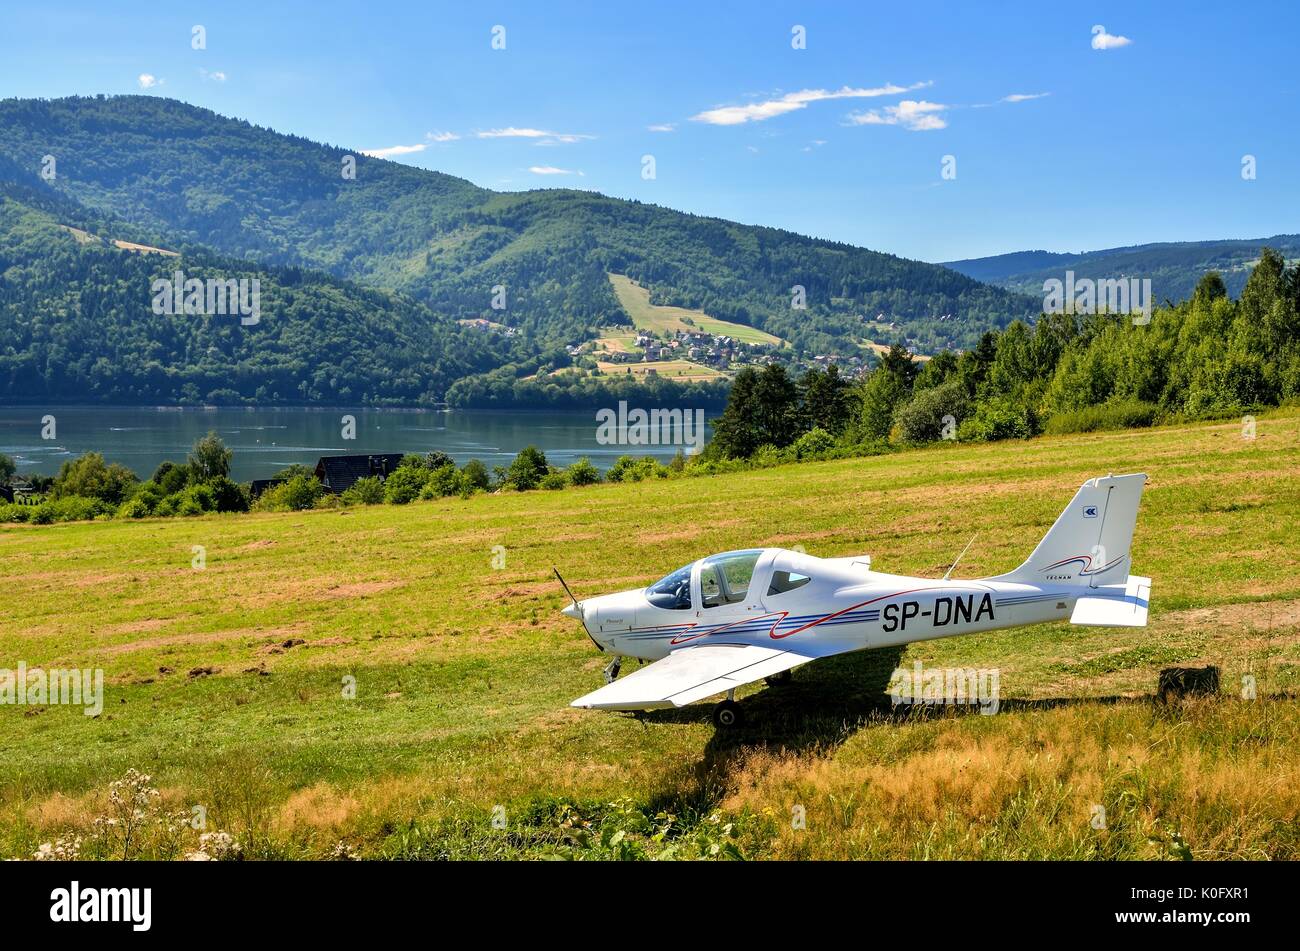 ZAR, Polen - 5. AUGUST 2017: Flughafen für Segelflugzeuge auf dem Berg Zar in den Beskiden in Polen. Stockfoto